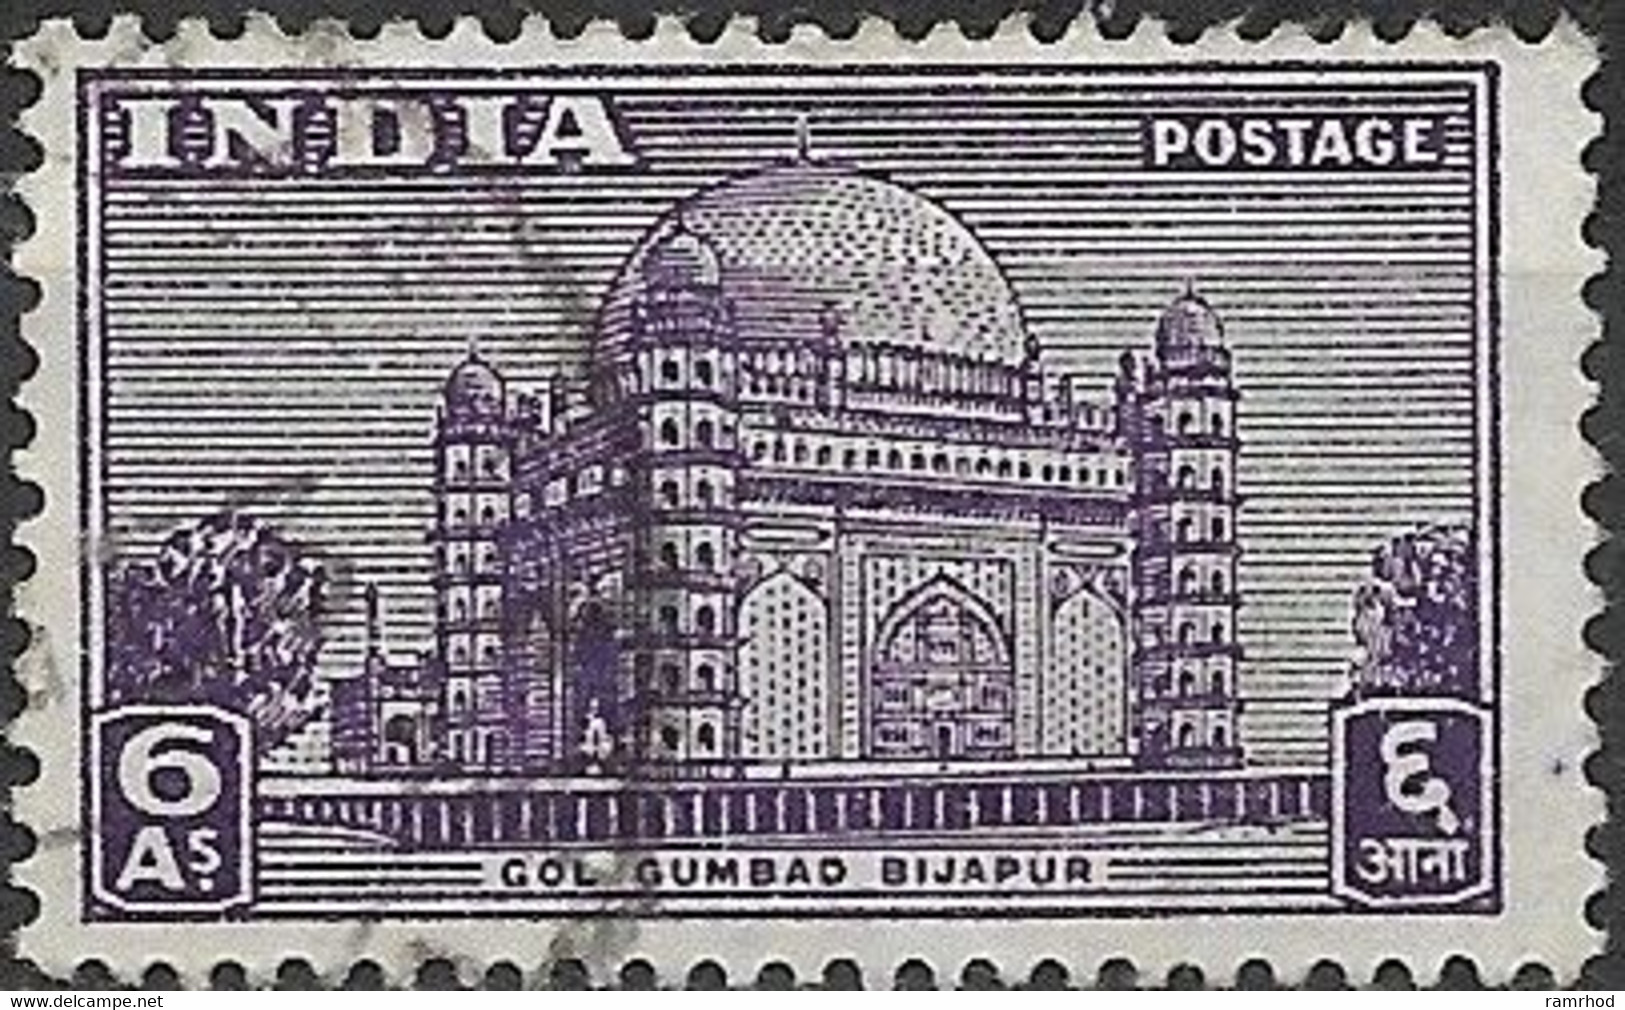 INDIA 1949 Gol Gumbad, Bijapur - 6a - Violet FU - Usati